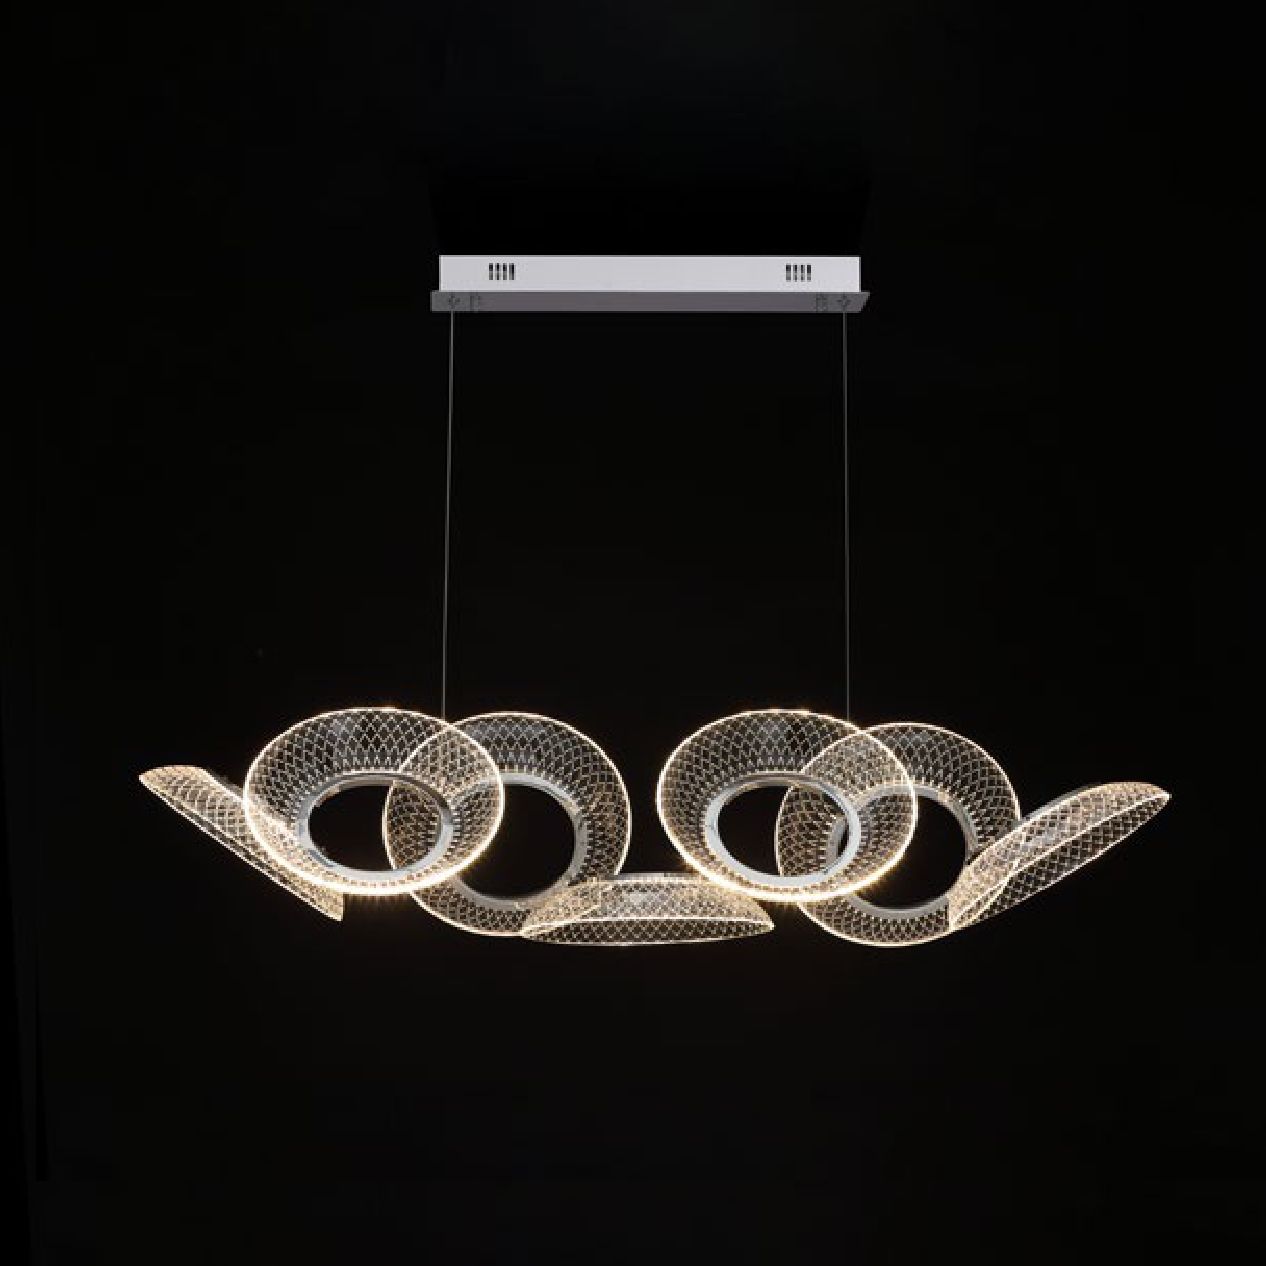 KERESA chandelier by Romatti